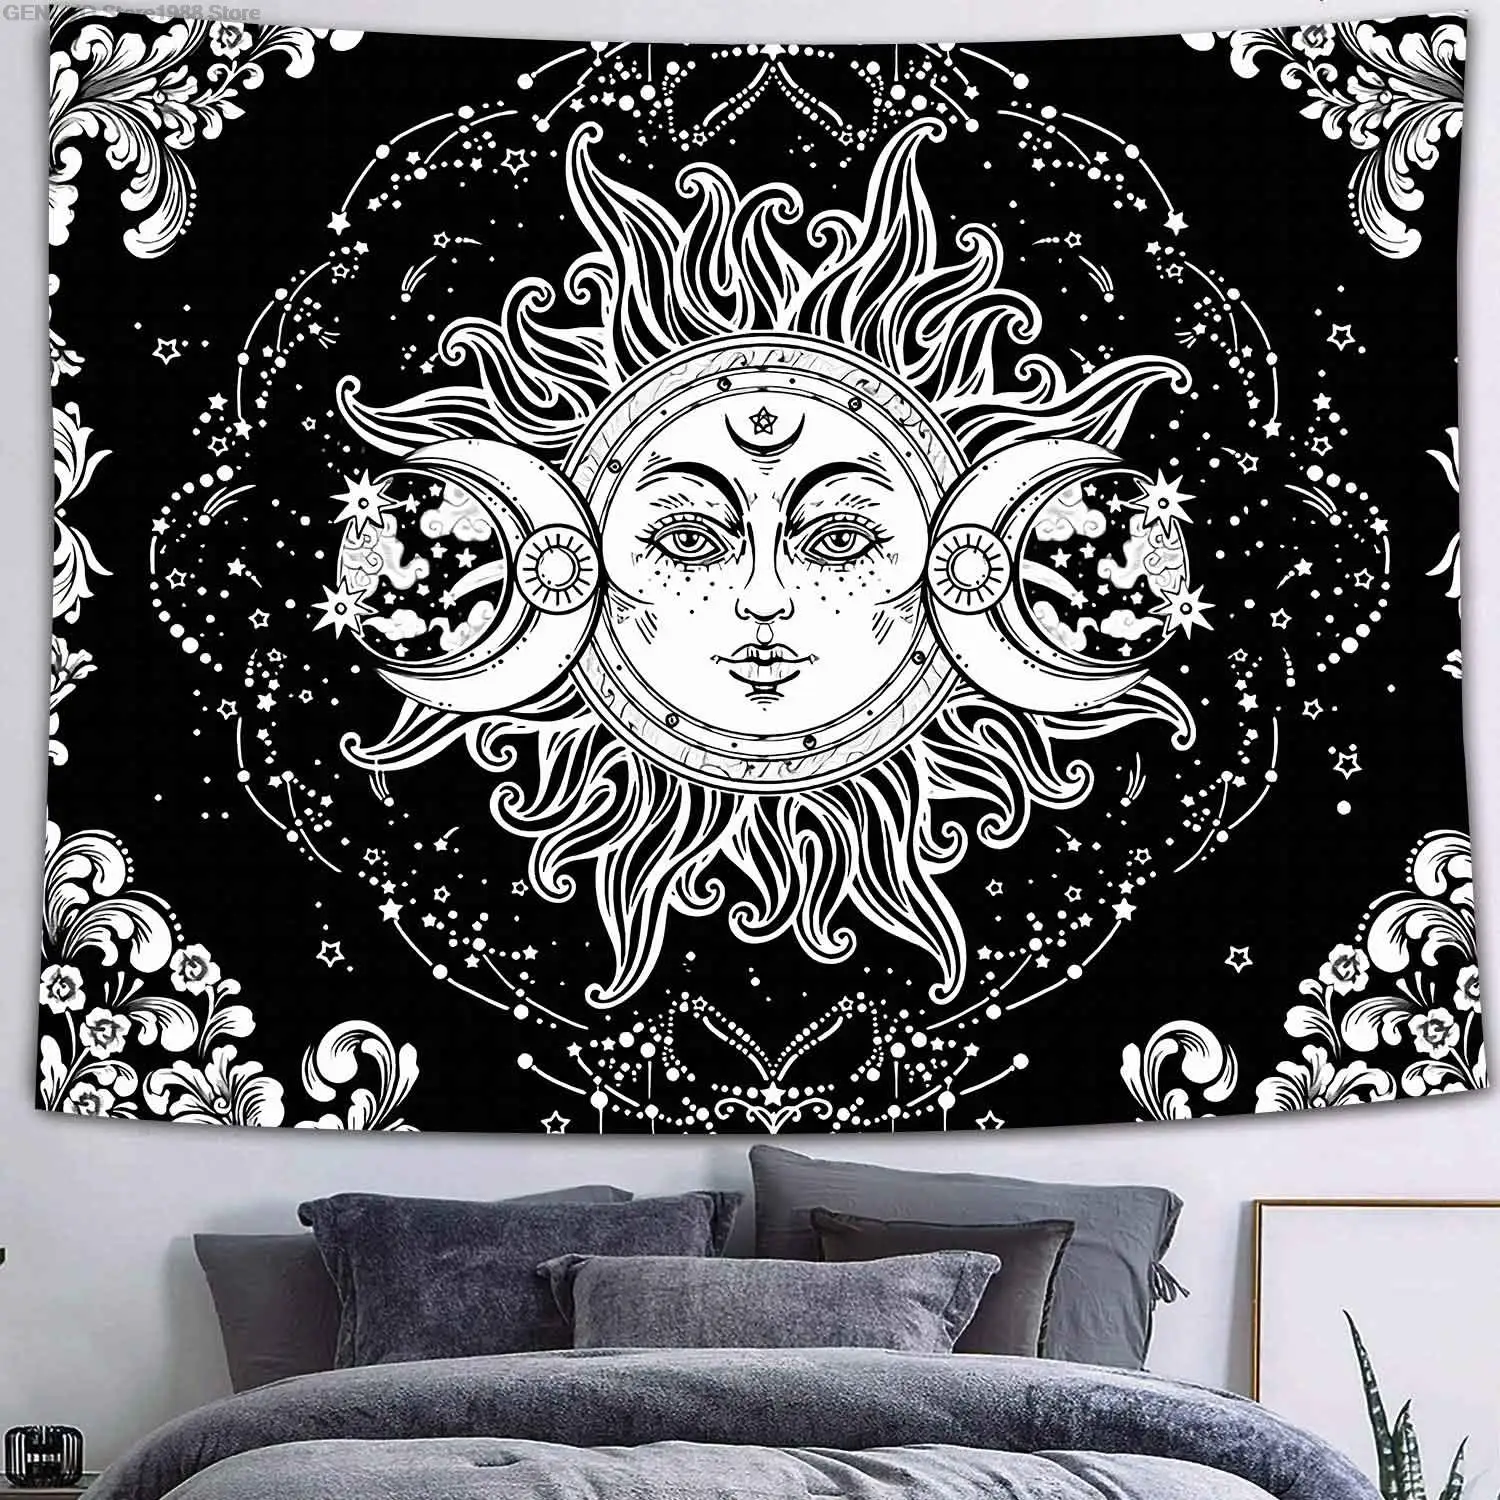 Simsant Planeten Tapiserie Triple Mond Tapiserie Schwarz und Weiß Thema Tapiserie Poster Wandbild Böhmischen Sonne Mond Wandt